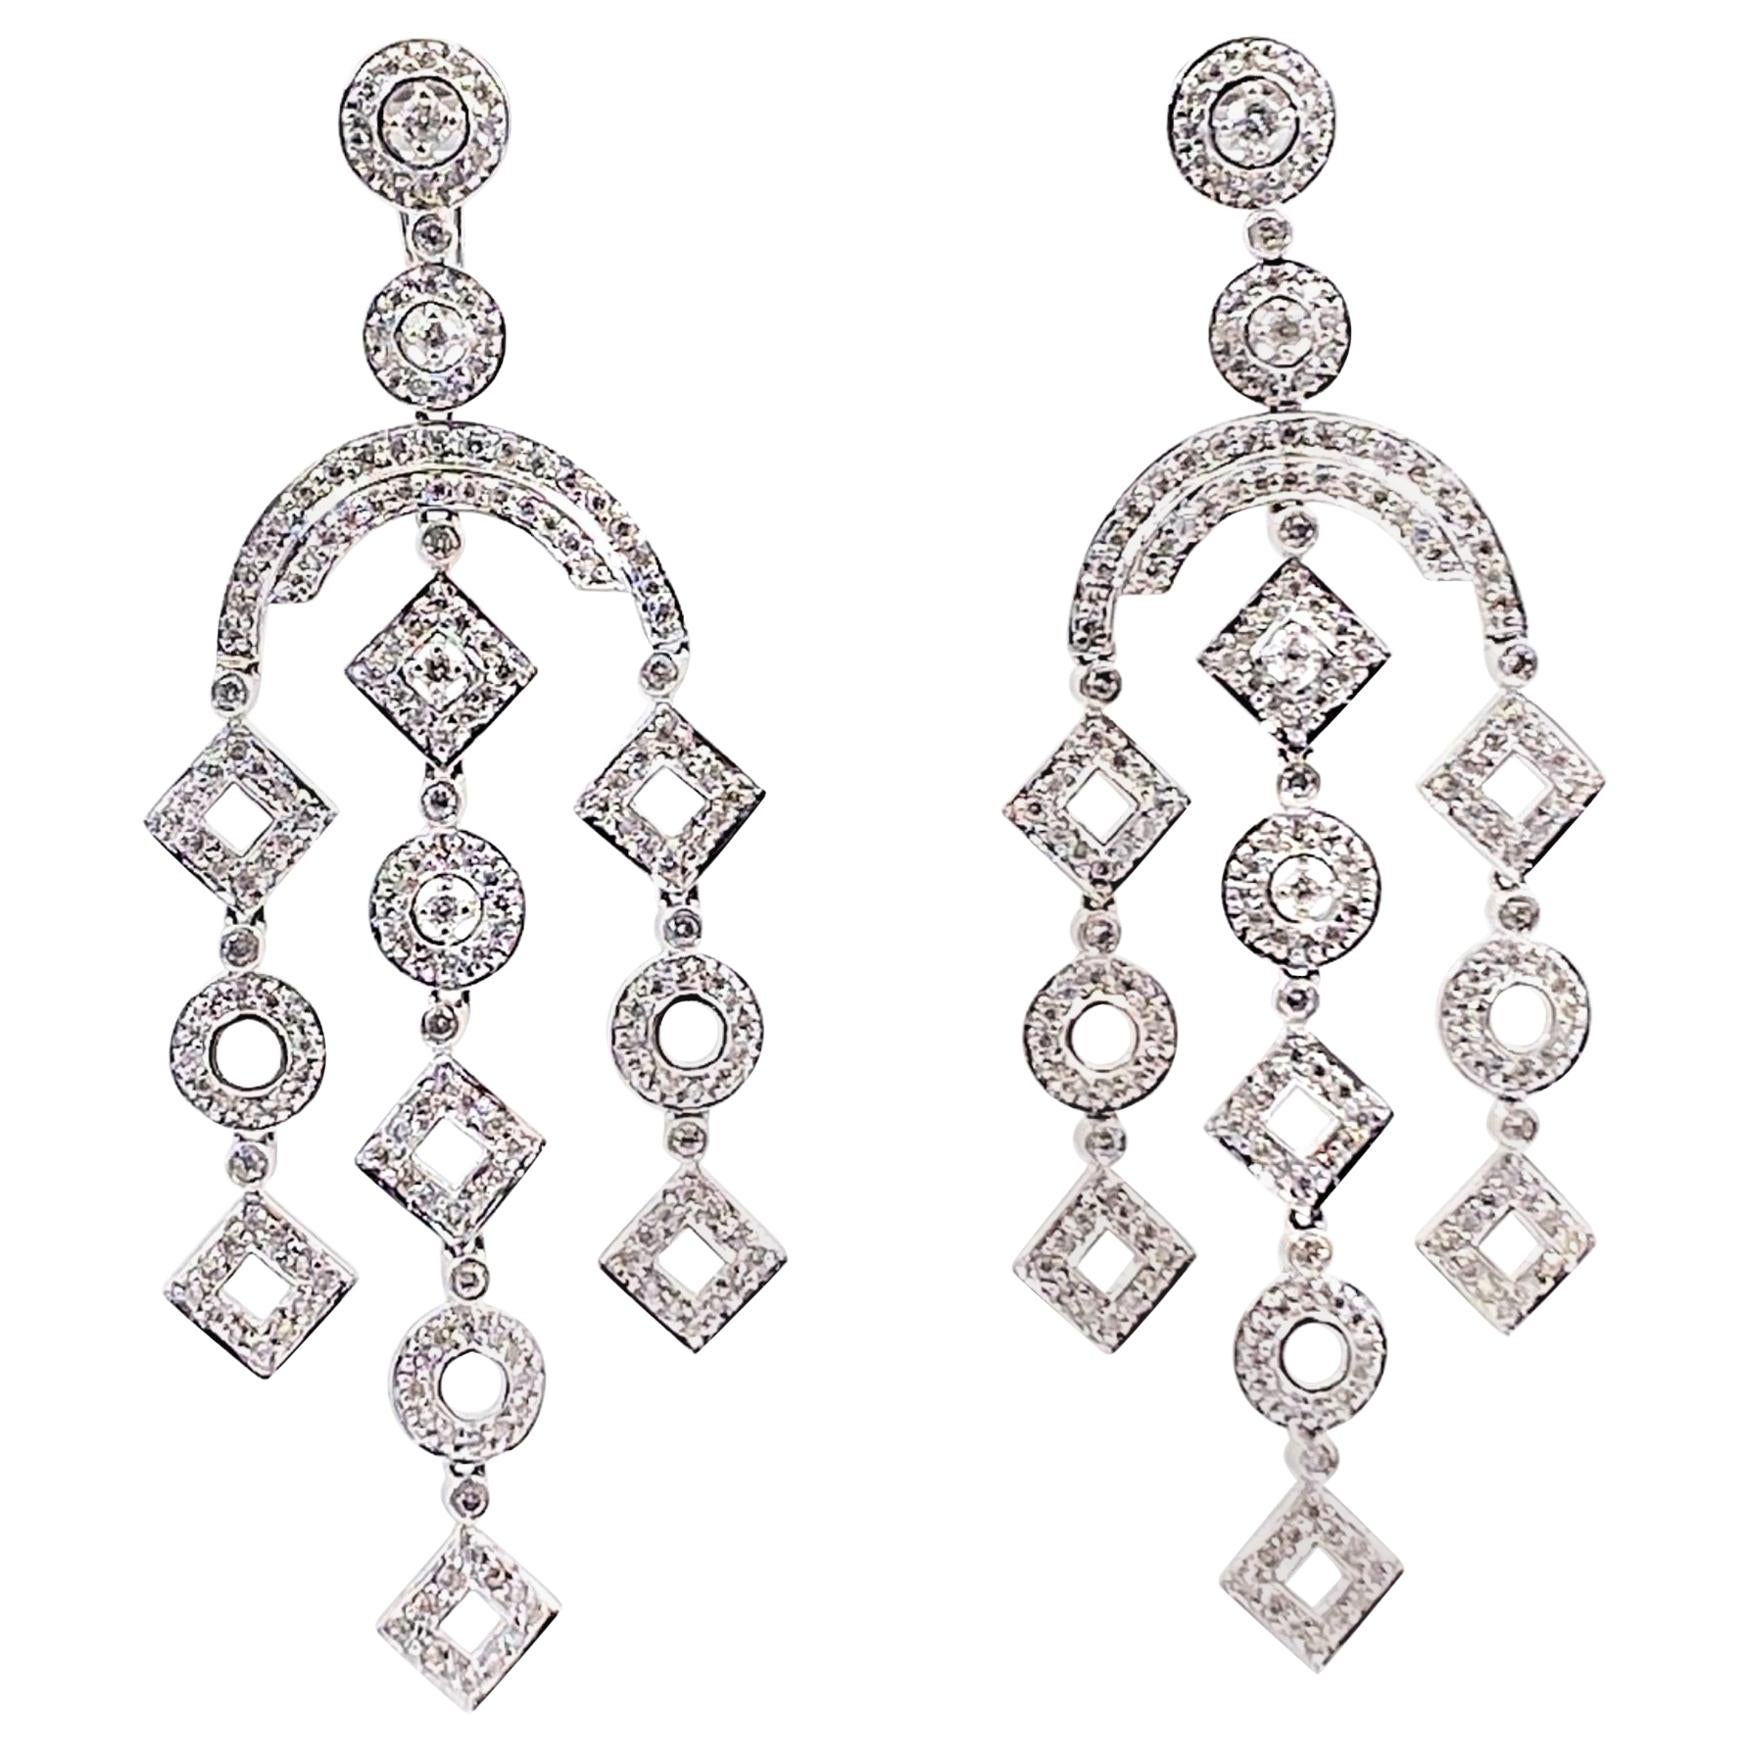 Diamond Geometric Chandelier Earrings 2 Carat Total Weight in 14 Karat Gold For Sale